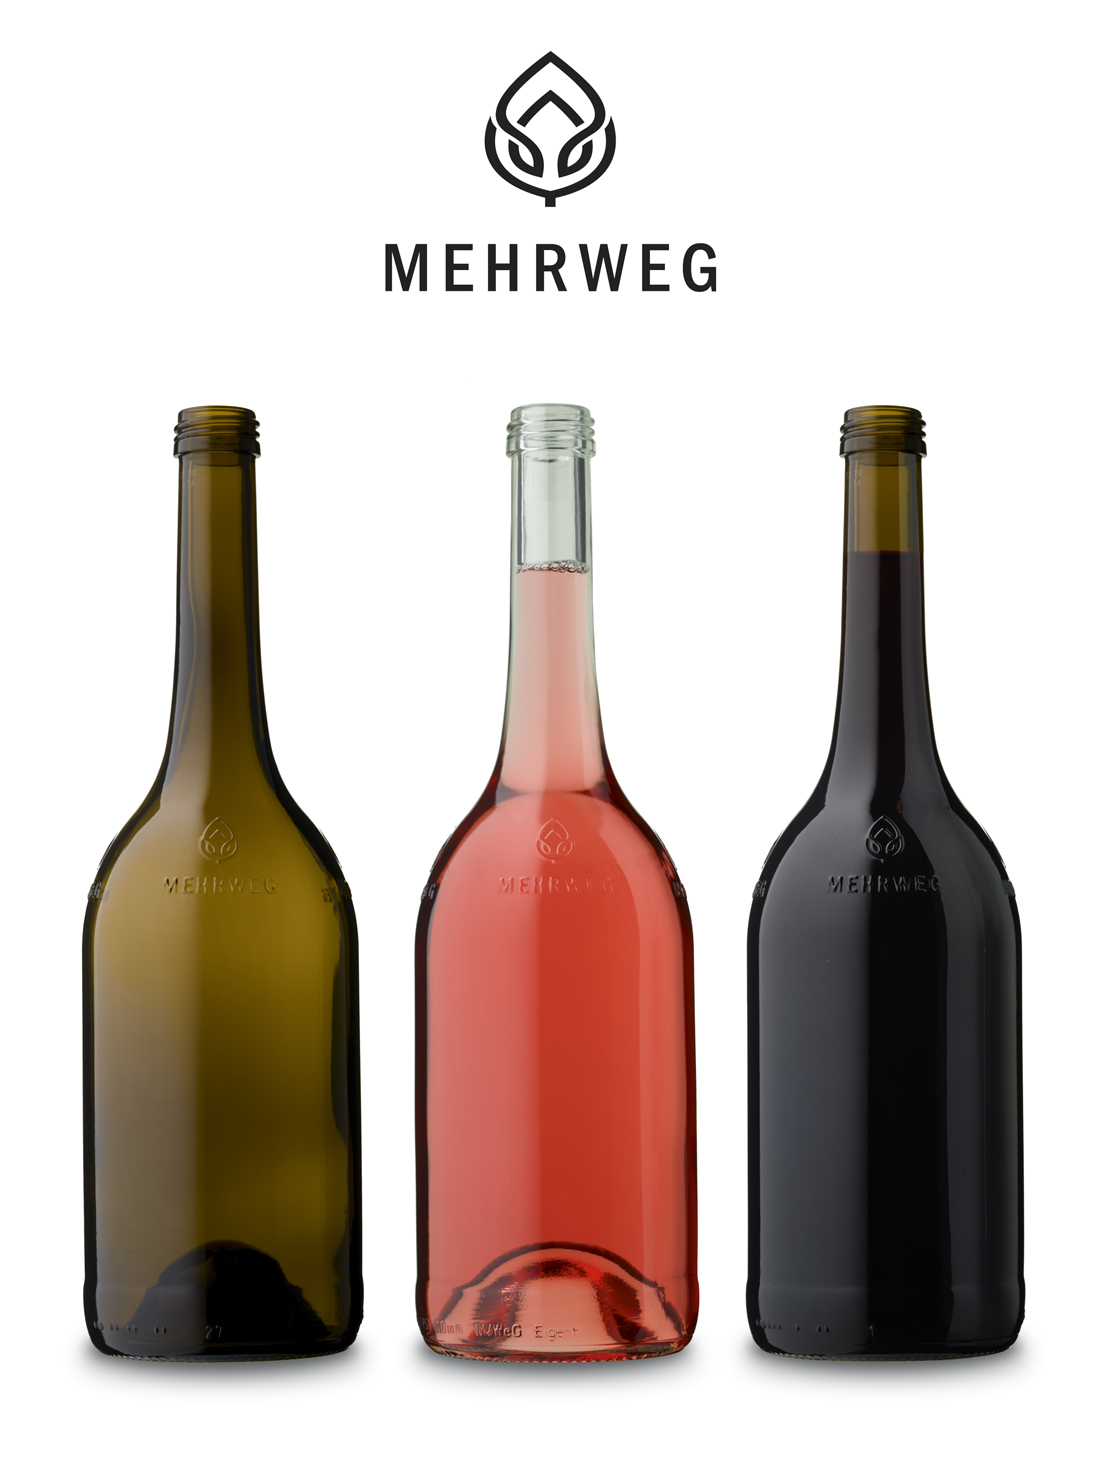 Wein-Mehrwegflasche - Reusable wine bottle